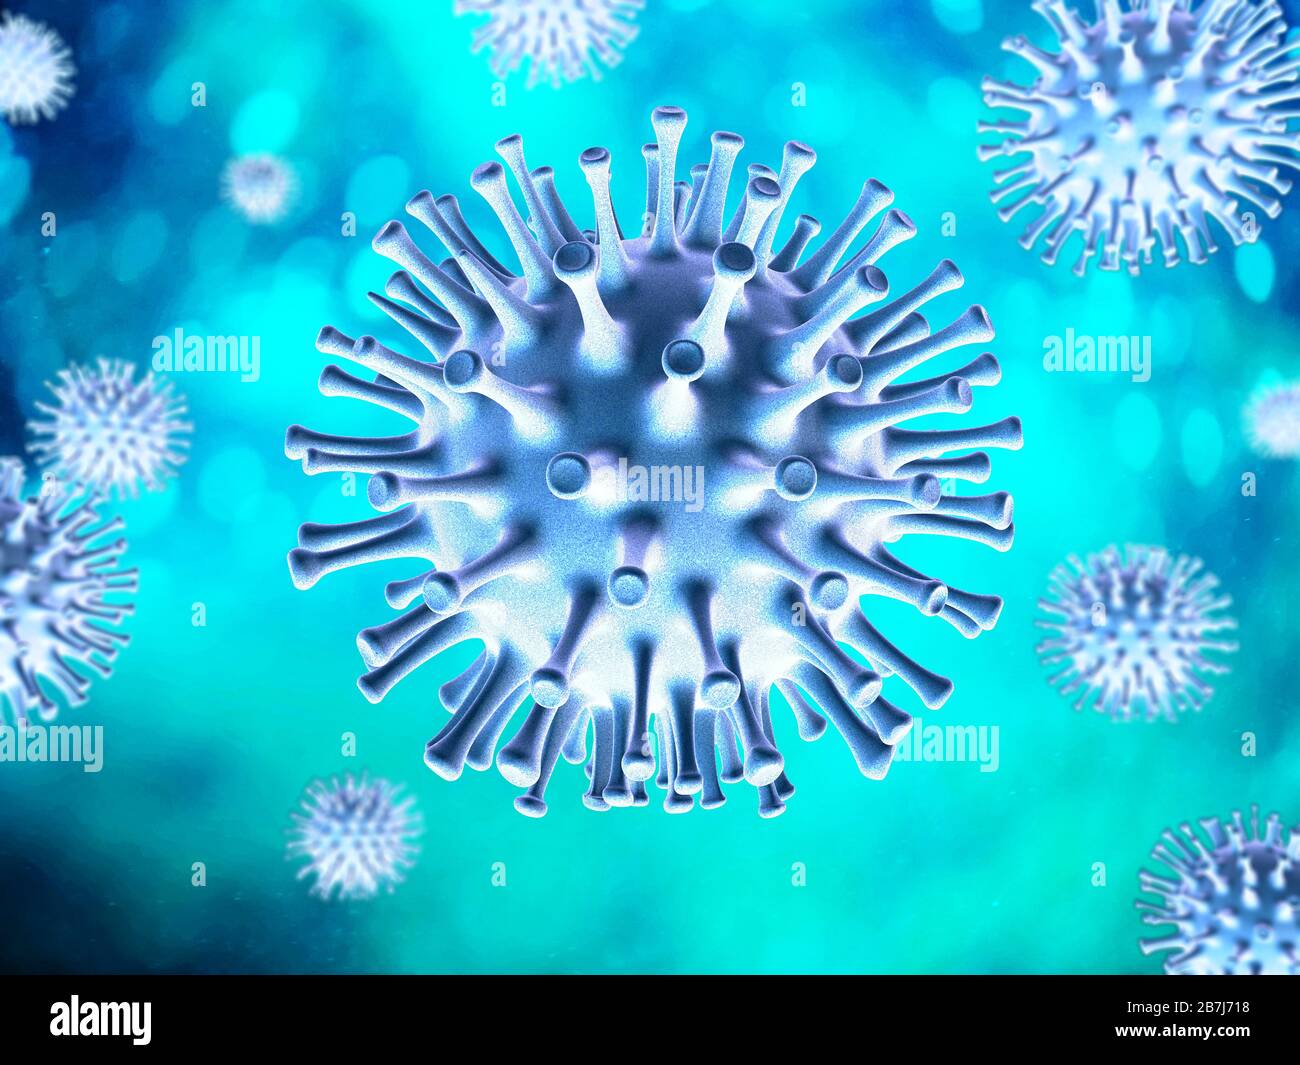 Scena del virus Corona. Soggetti blu su sfondo turchese. Foto Stock